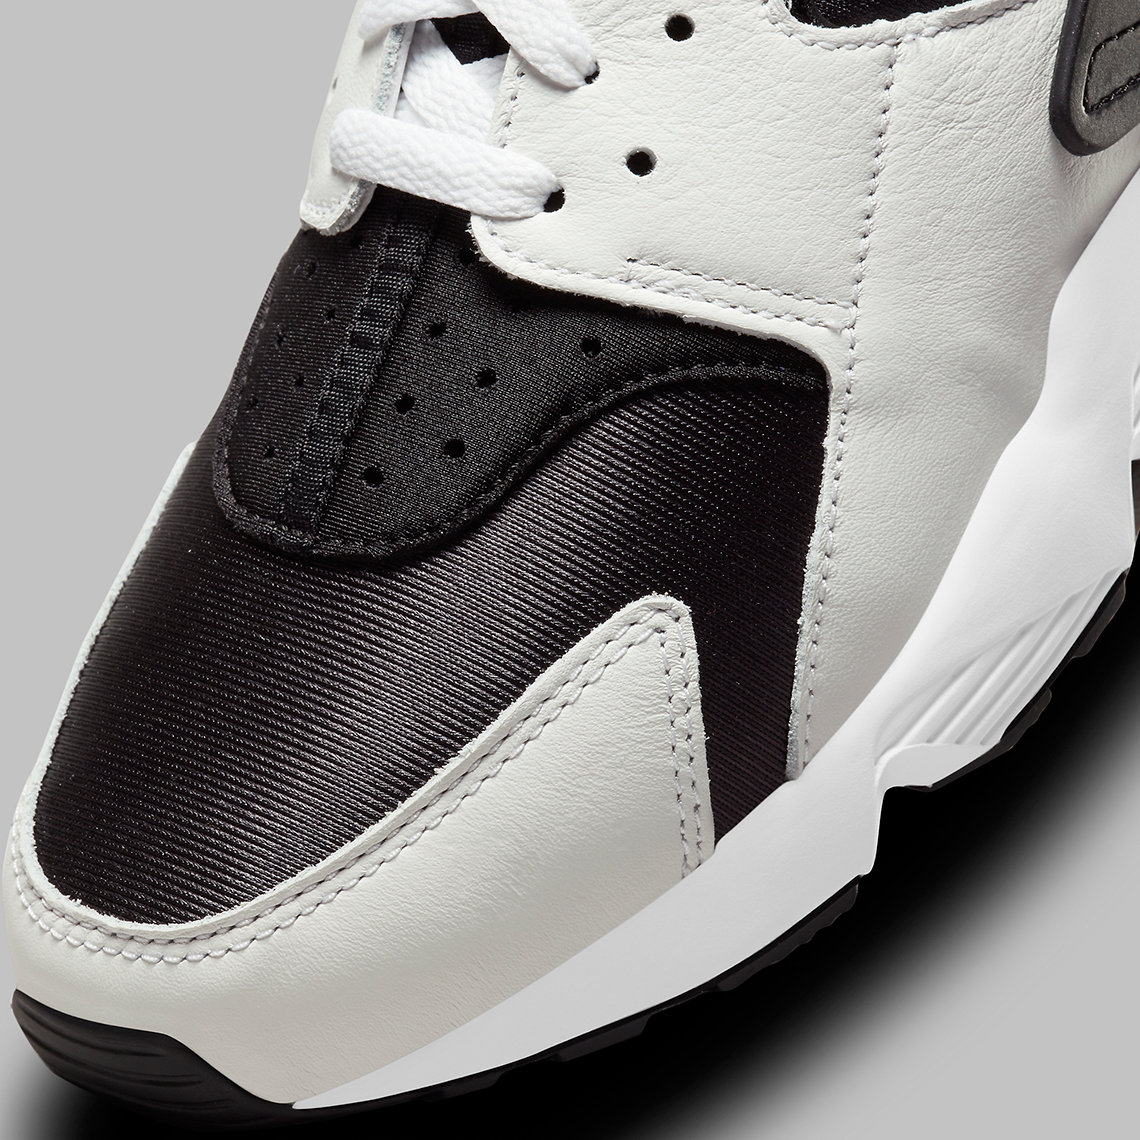 Nike Air Huarache OG White Black SneakerNews.com